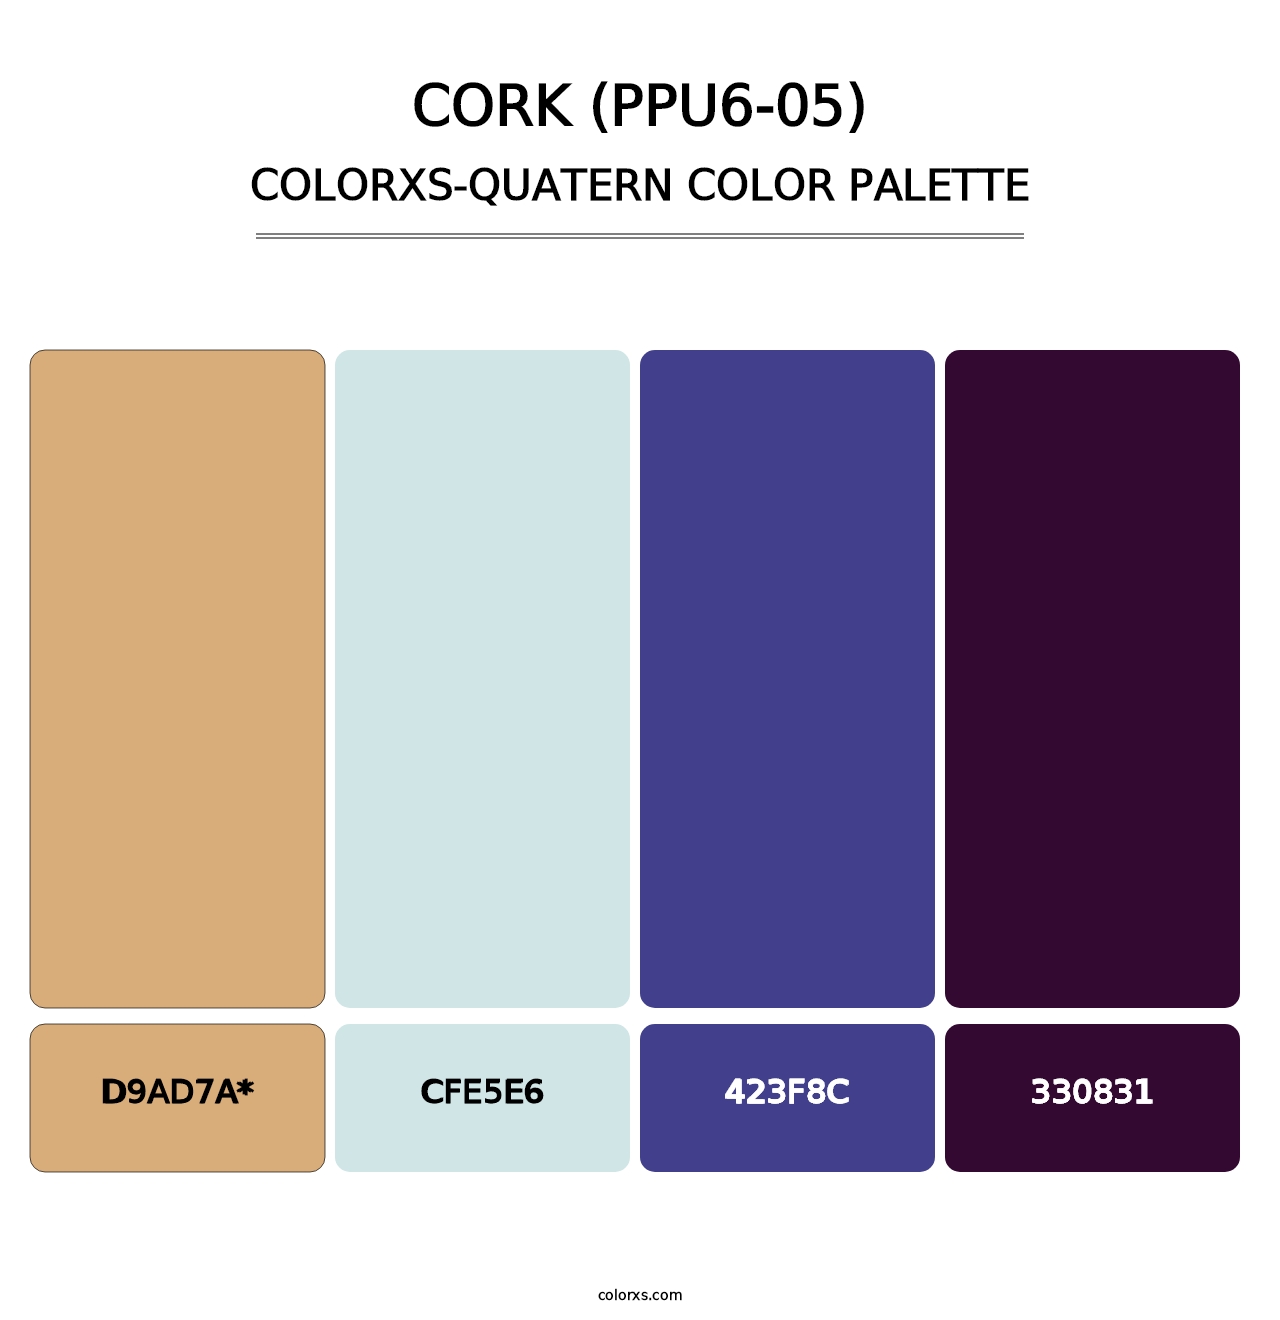 Cork (PPU6-05) - Colorxs Quatern Palette